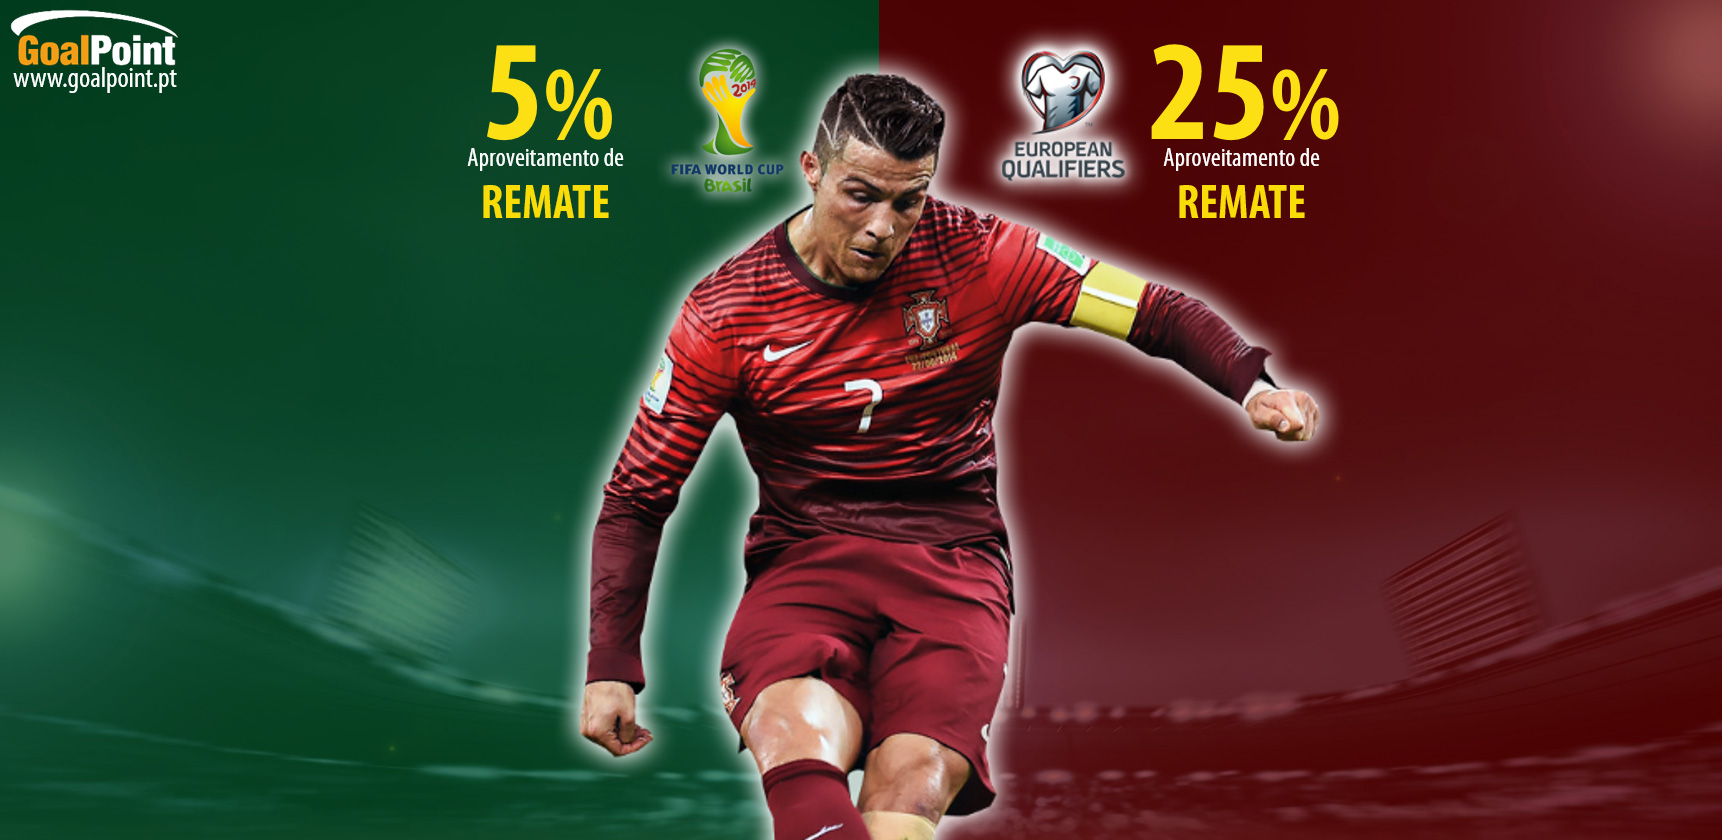 Cristiano Ronaldo: Desempenho comparado Mundial 14 vs Qualif. Euro 2016